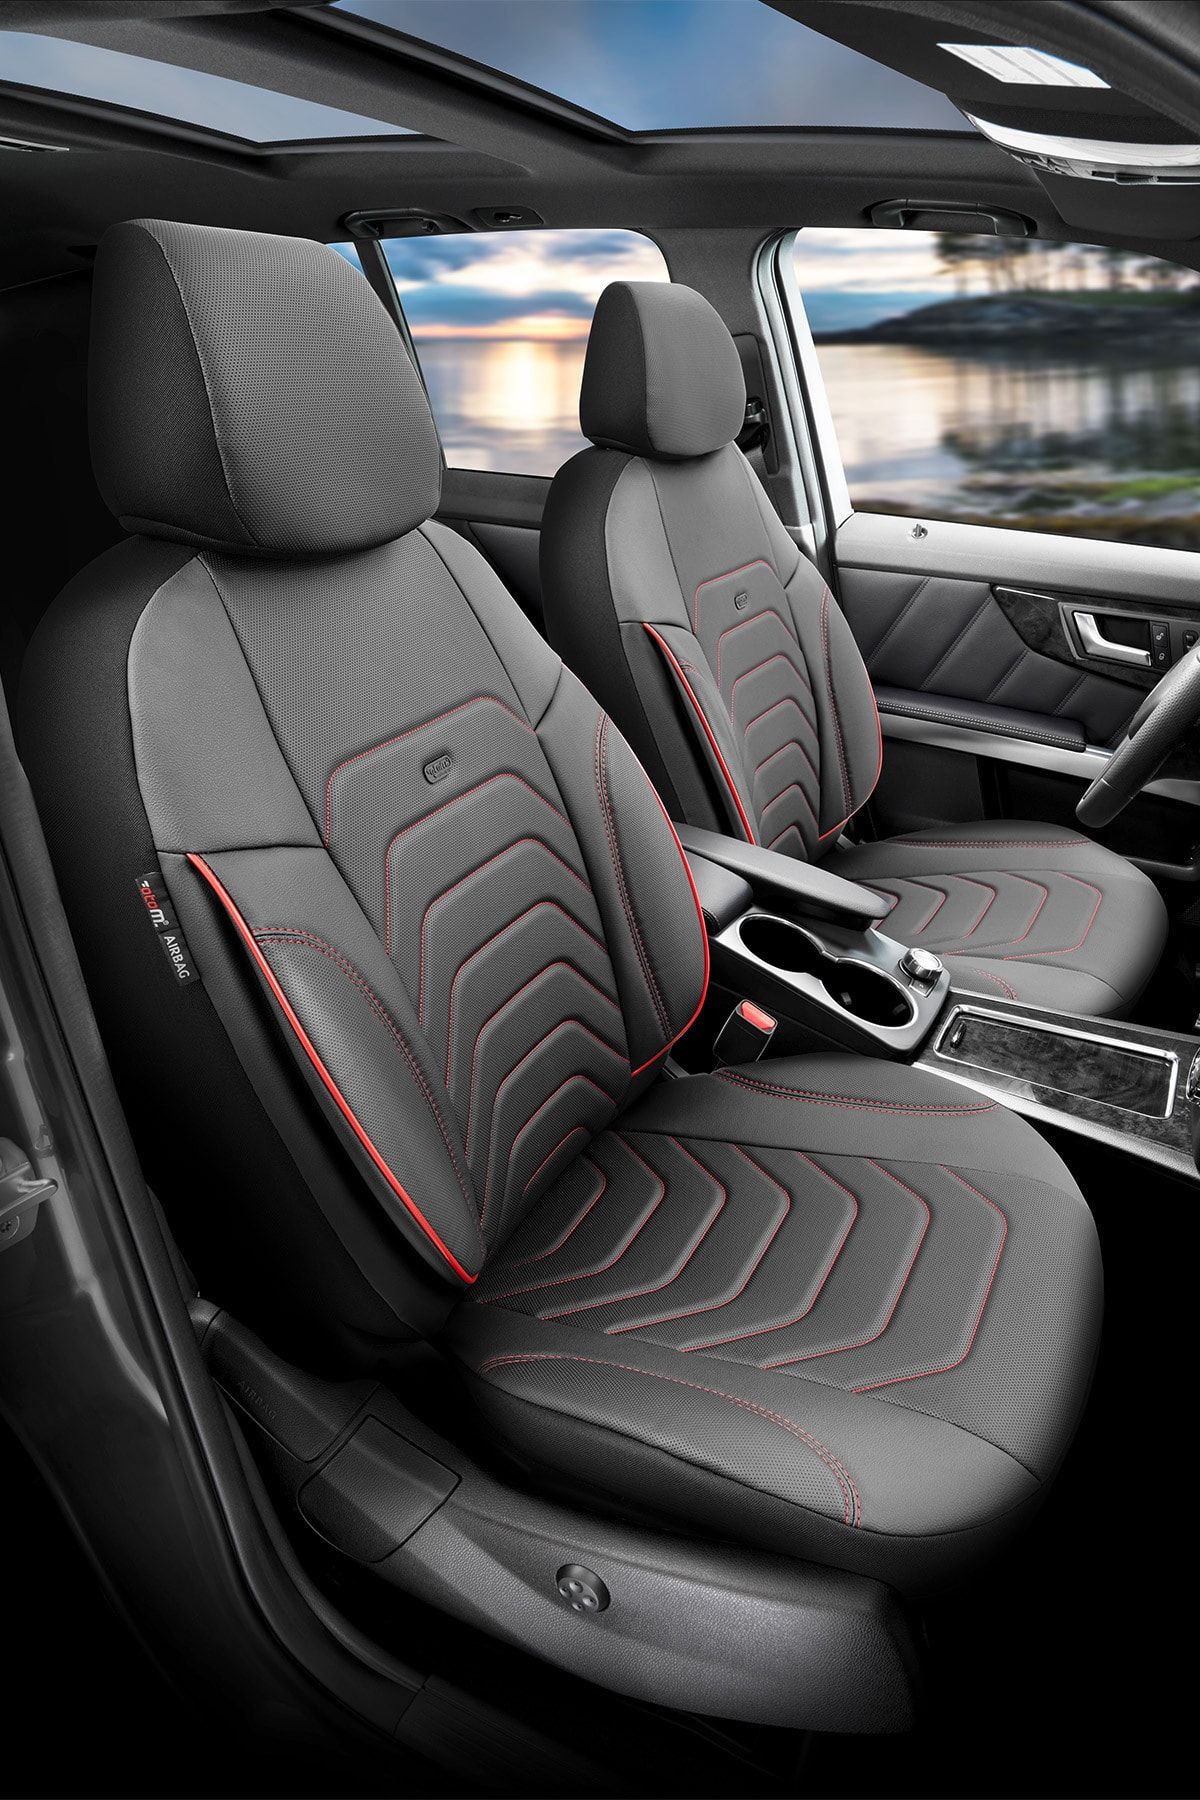 Otom Yeni Core Design Premium Deri Ekstra Destekli Oto Koltuk Kılıfı Tam Set - Kırmızı